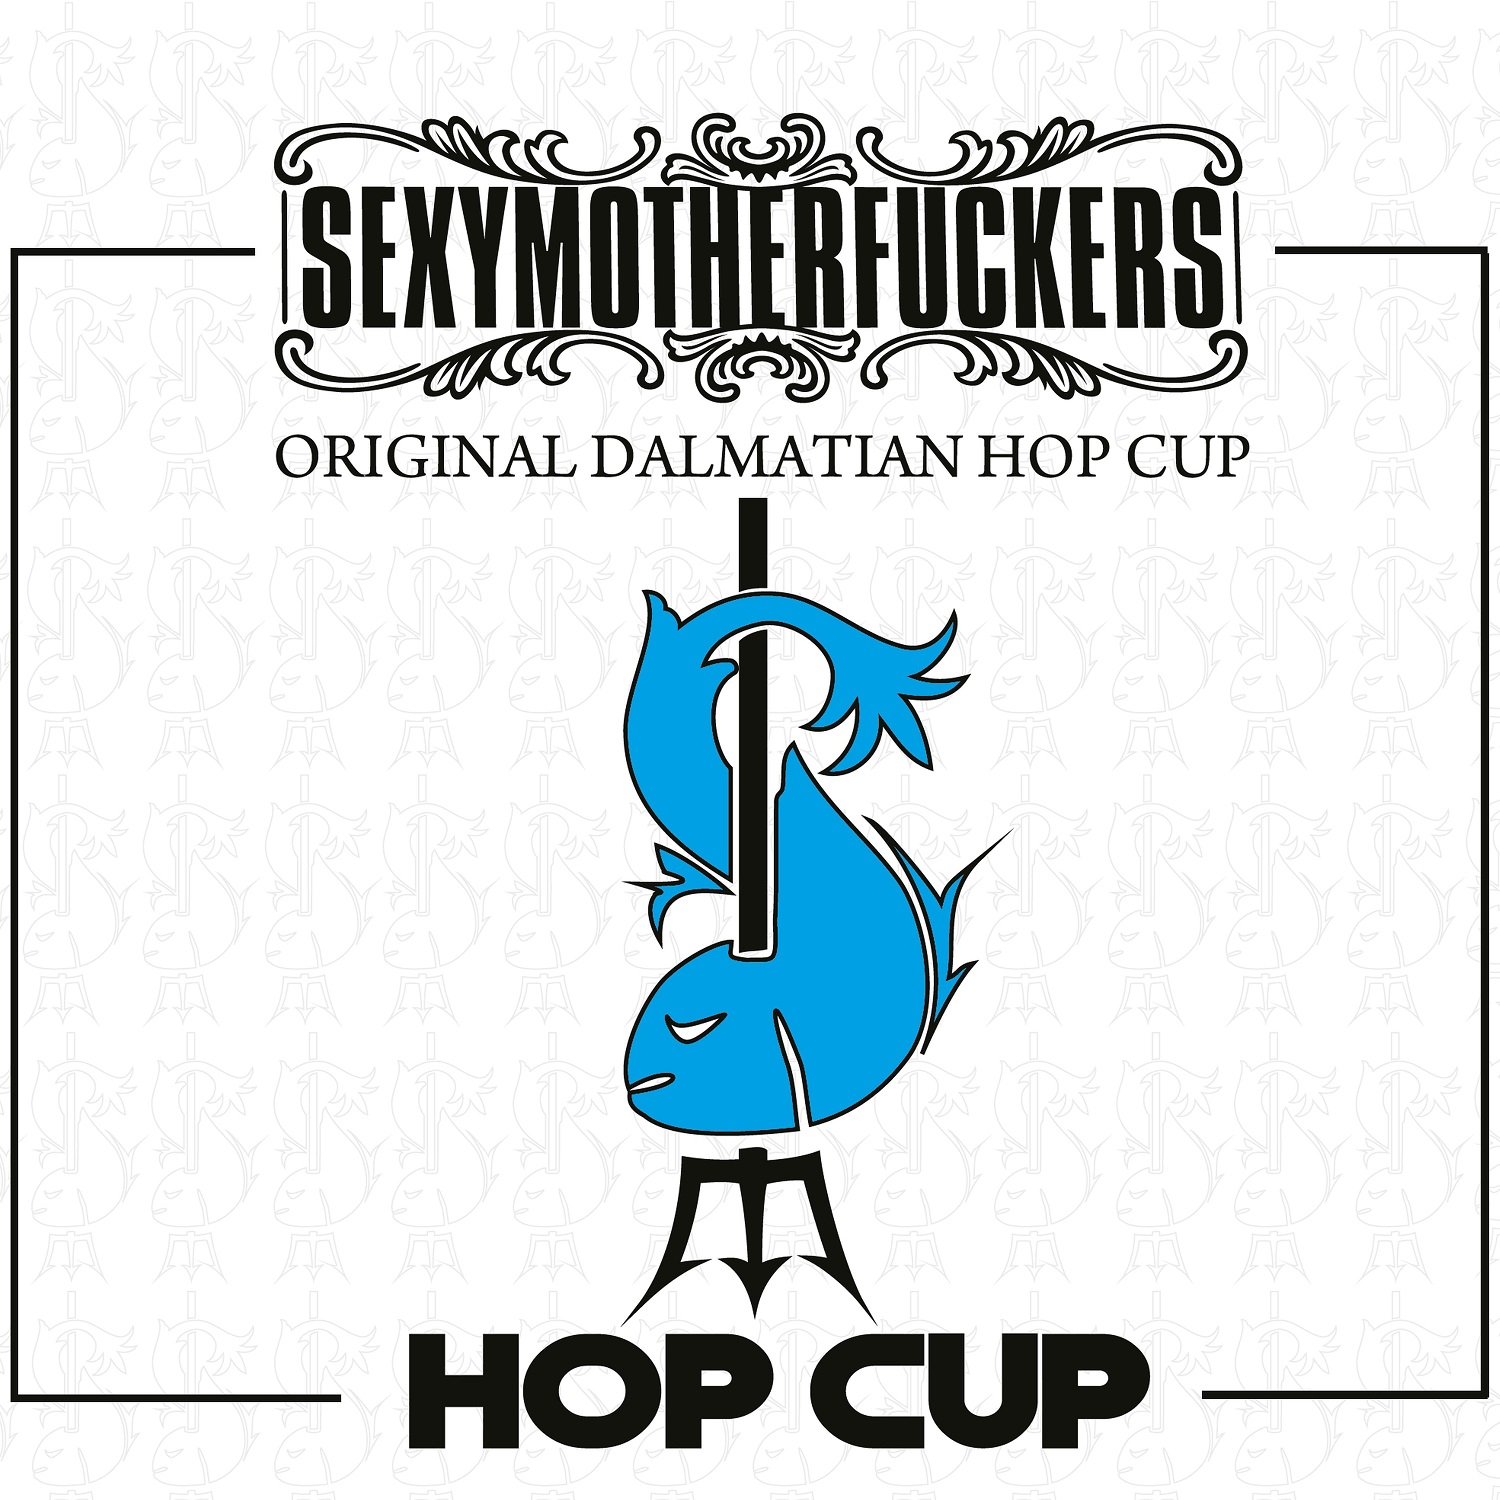 Sexymotherfuckers, prvaci originalnog dalmatinskog hop cupa, imaju novi album